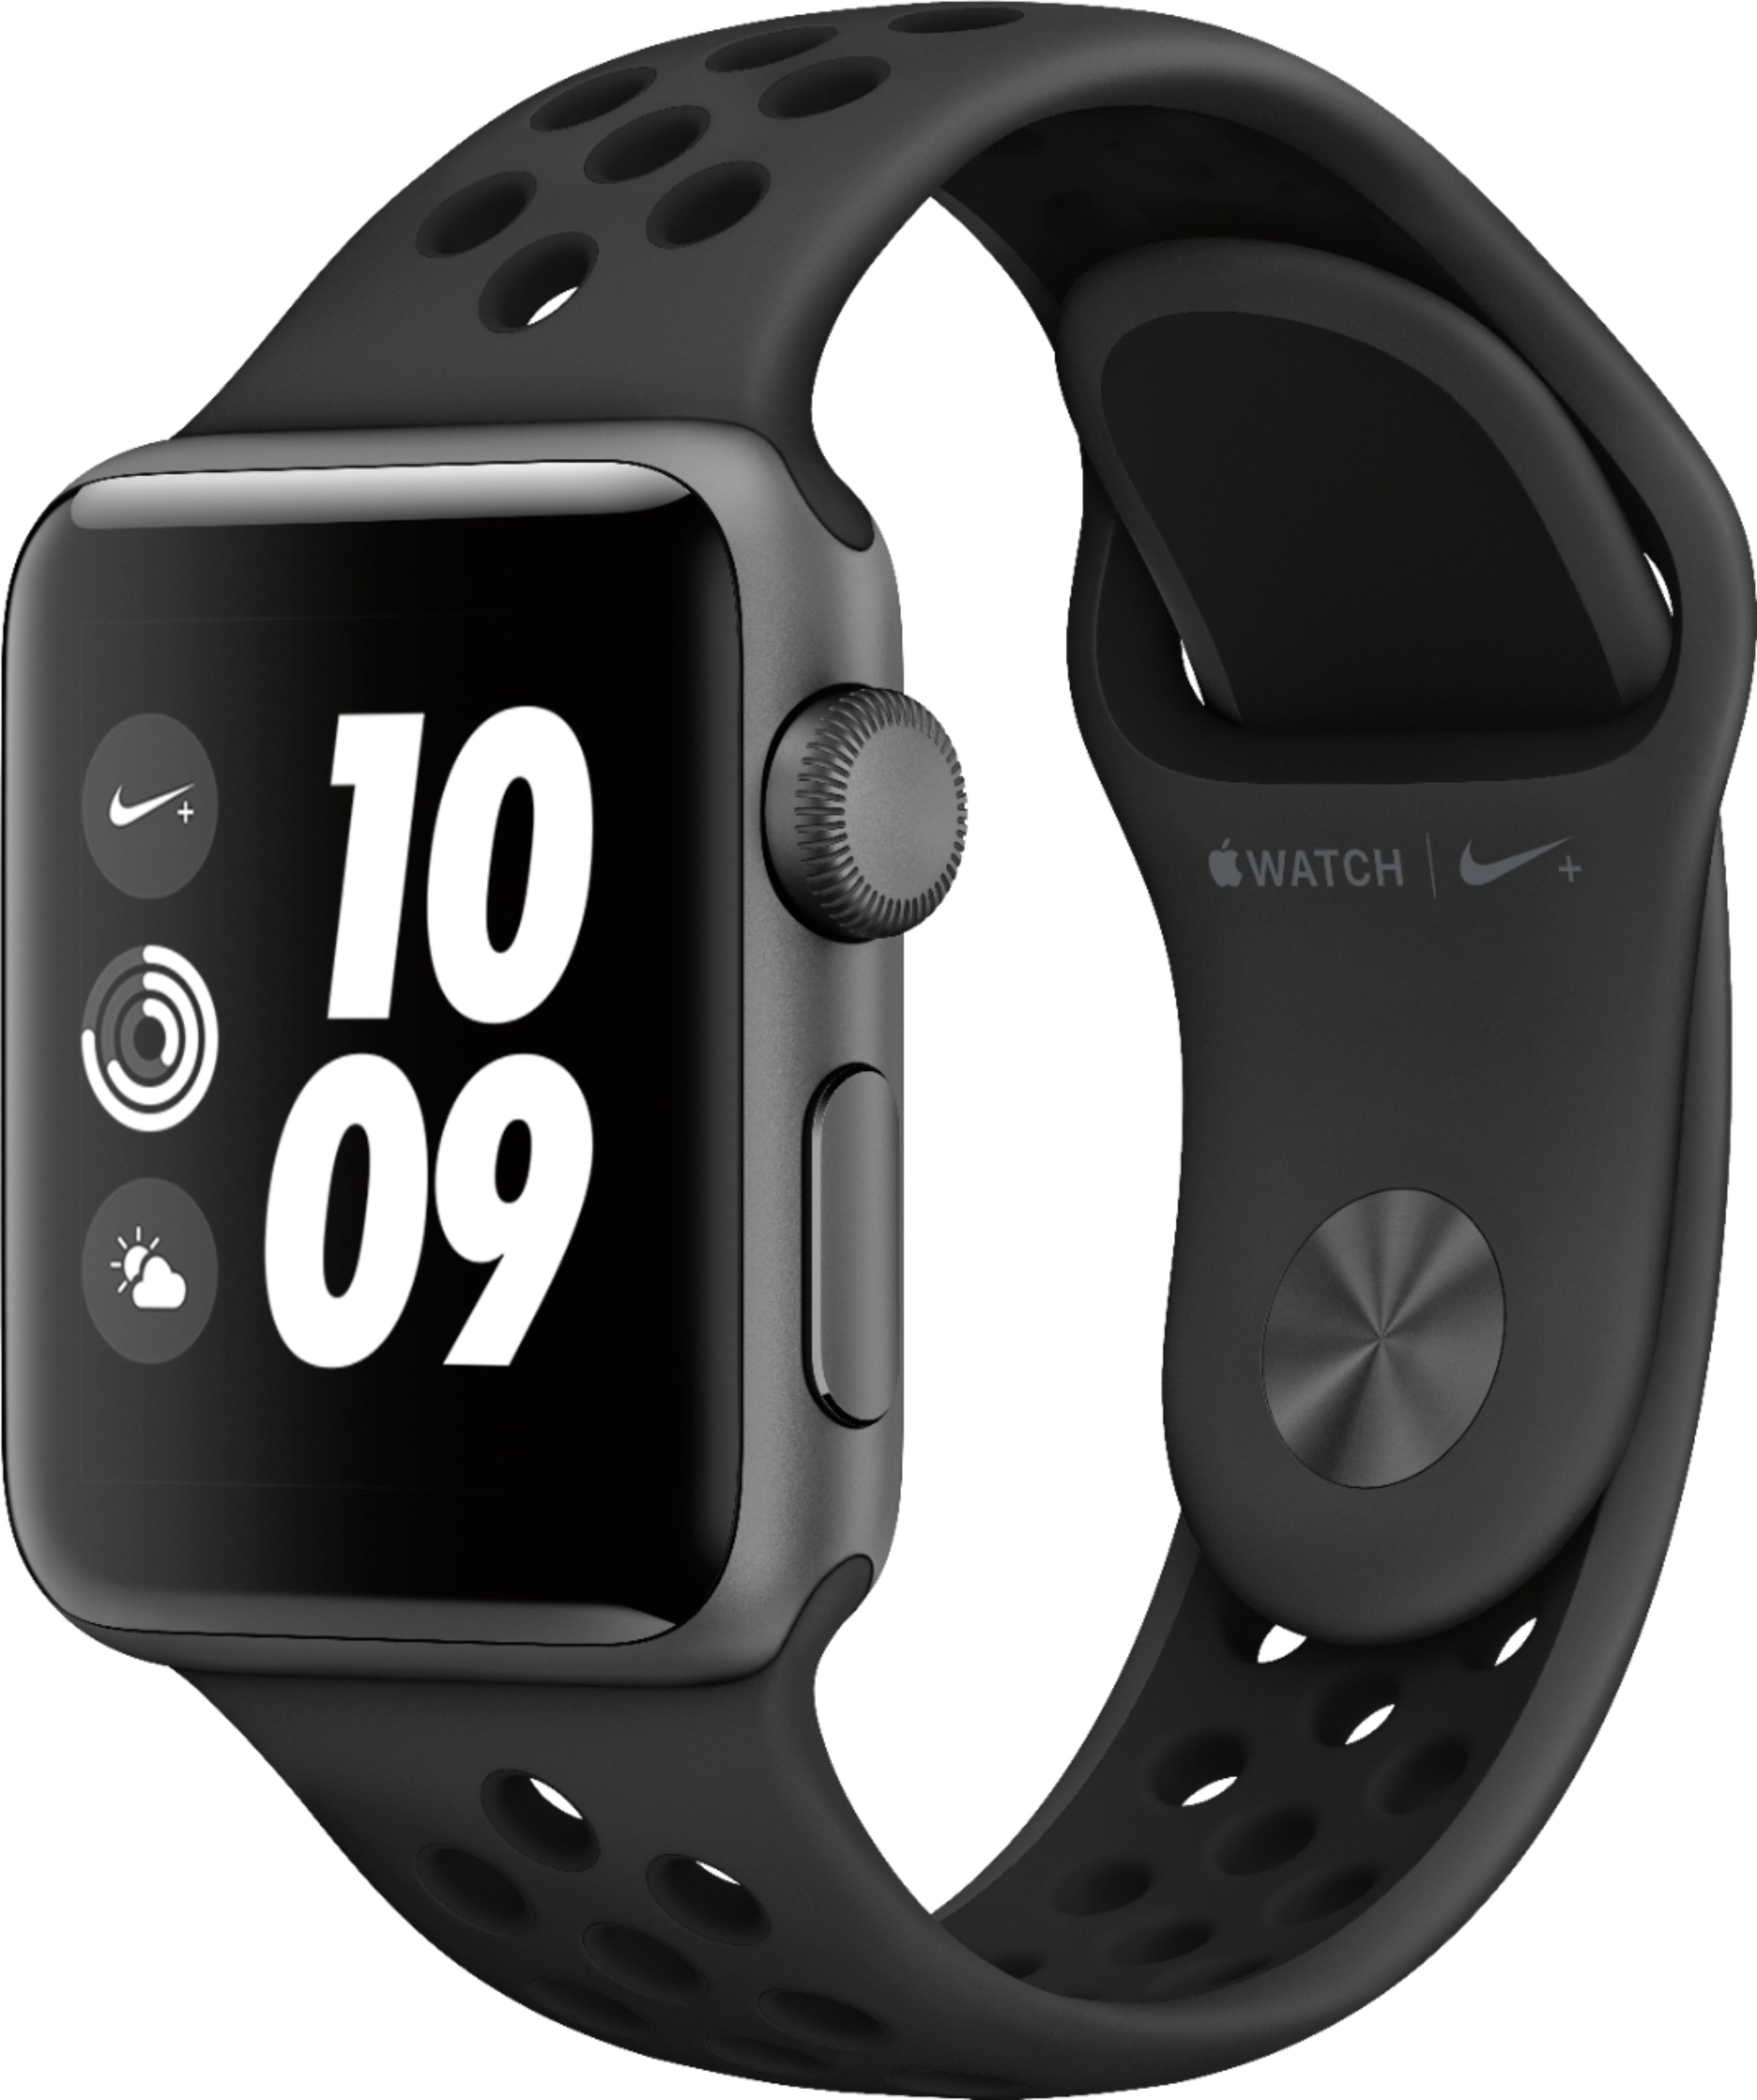 Apple Watch Nike+ Series 3 (GPS), 38mm Space Gray - Best Buy